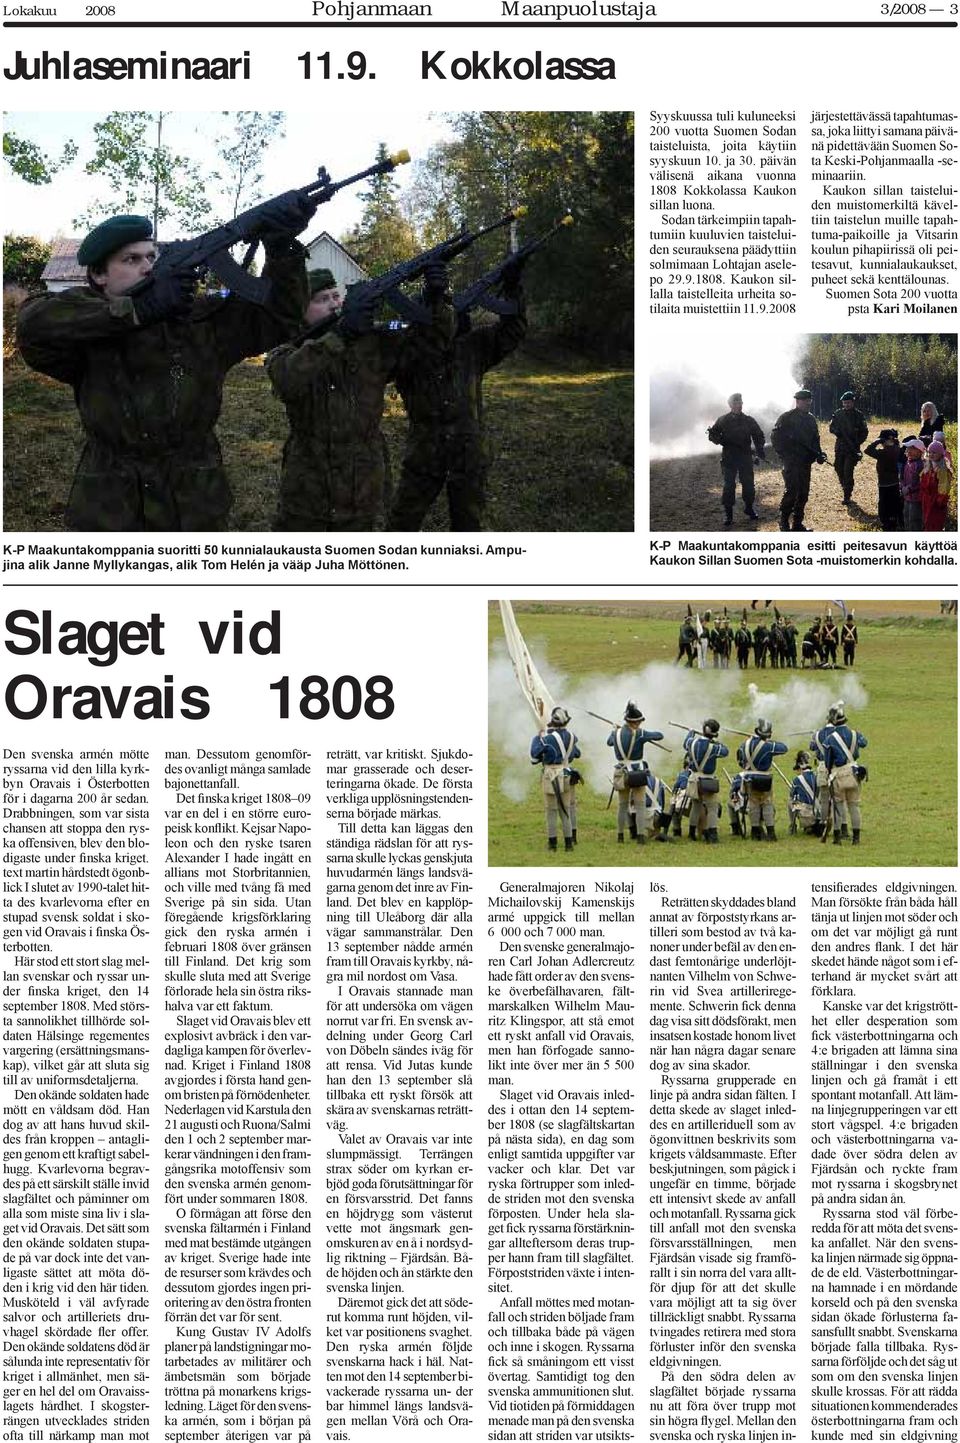 9.2008 järjestettävässä tapahtumassa, joka liittyi samana päivänä pidettävään Suomen Sota Keski-Pohjanmaalla -seminaariin.